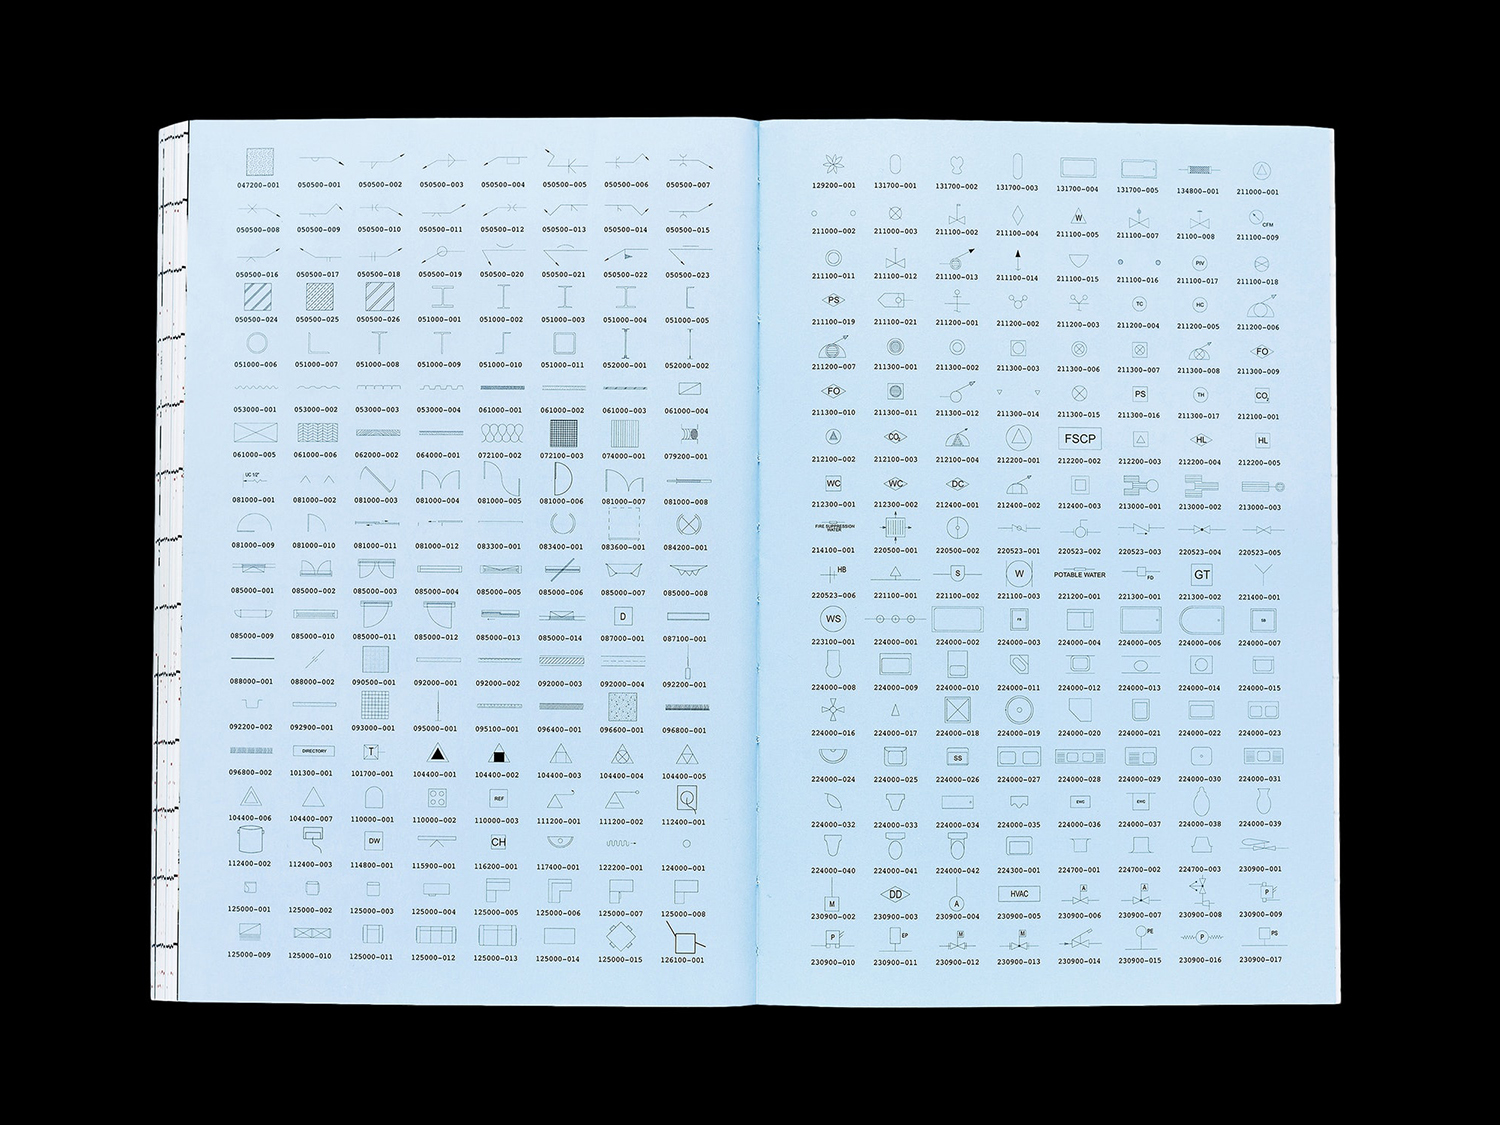 Book designed by Pentagram's Natasha Jen for OfficeUS Manual published by Lars Müller Publishers